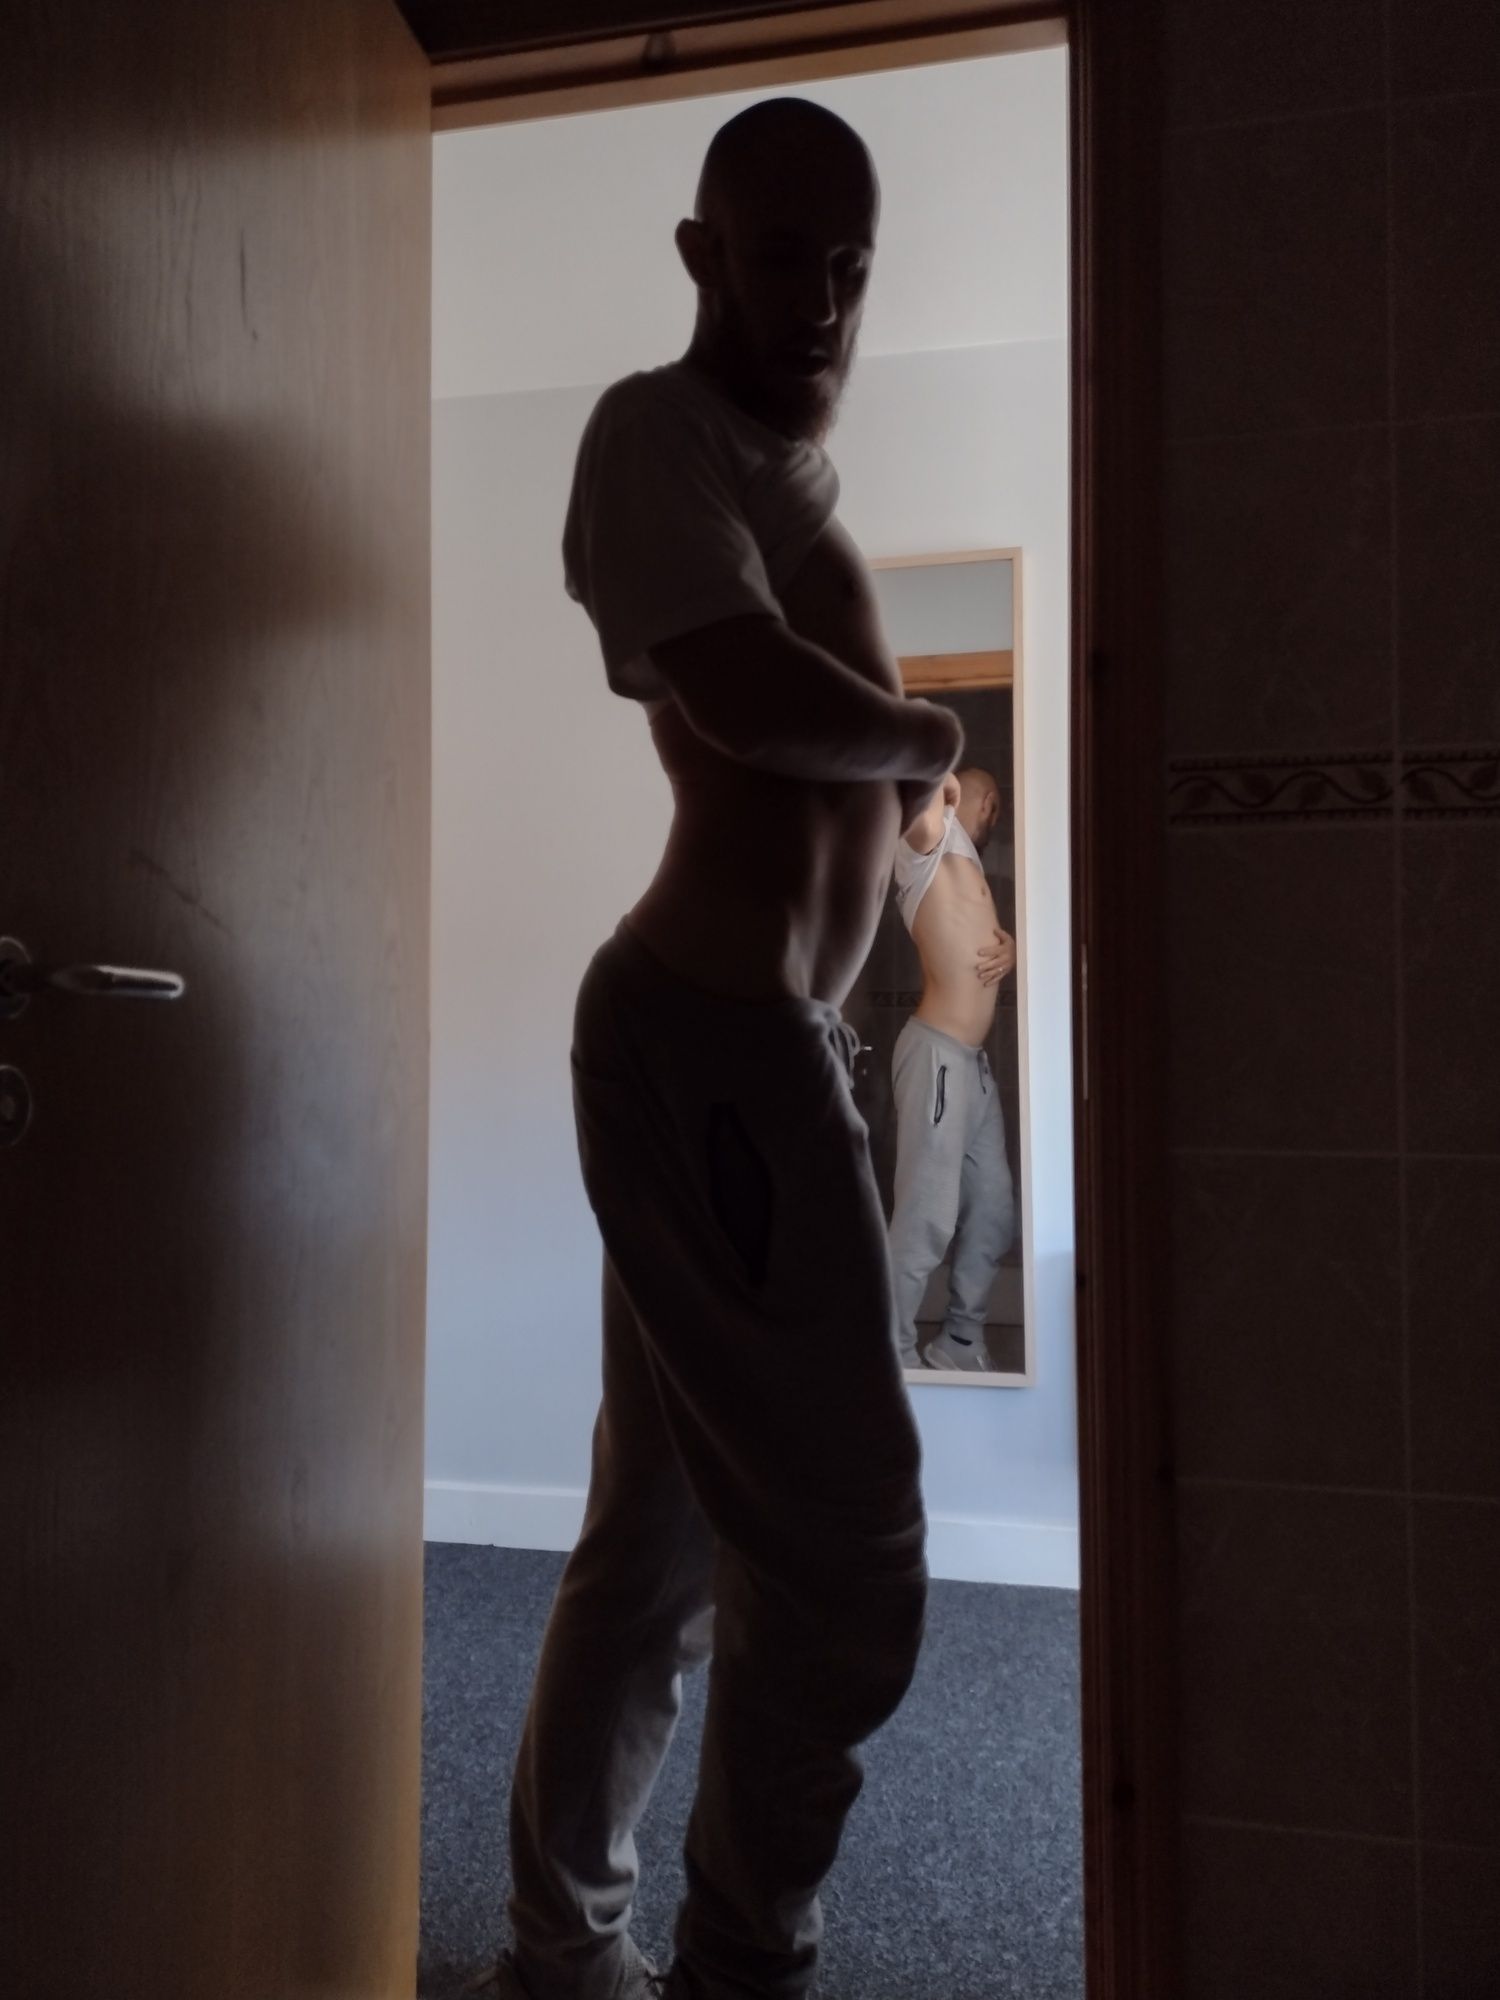 Posing nude in doorway #2